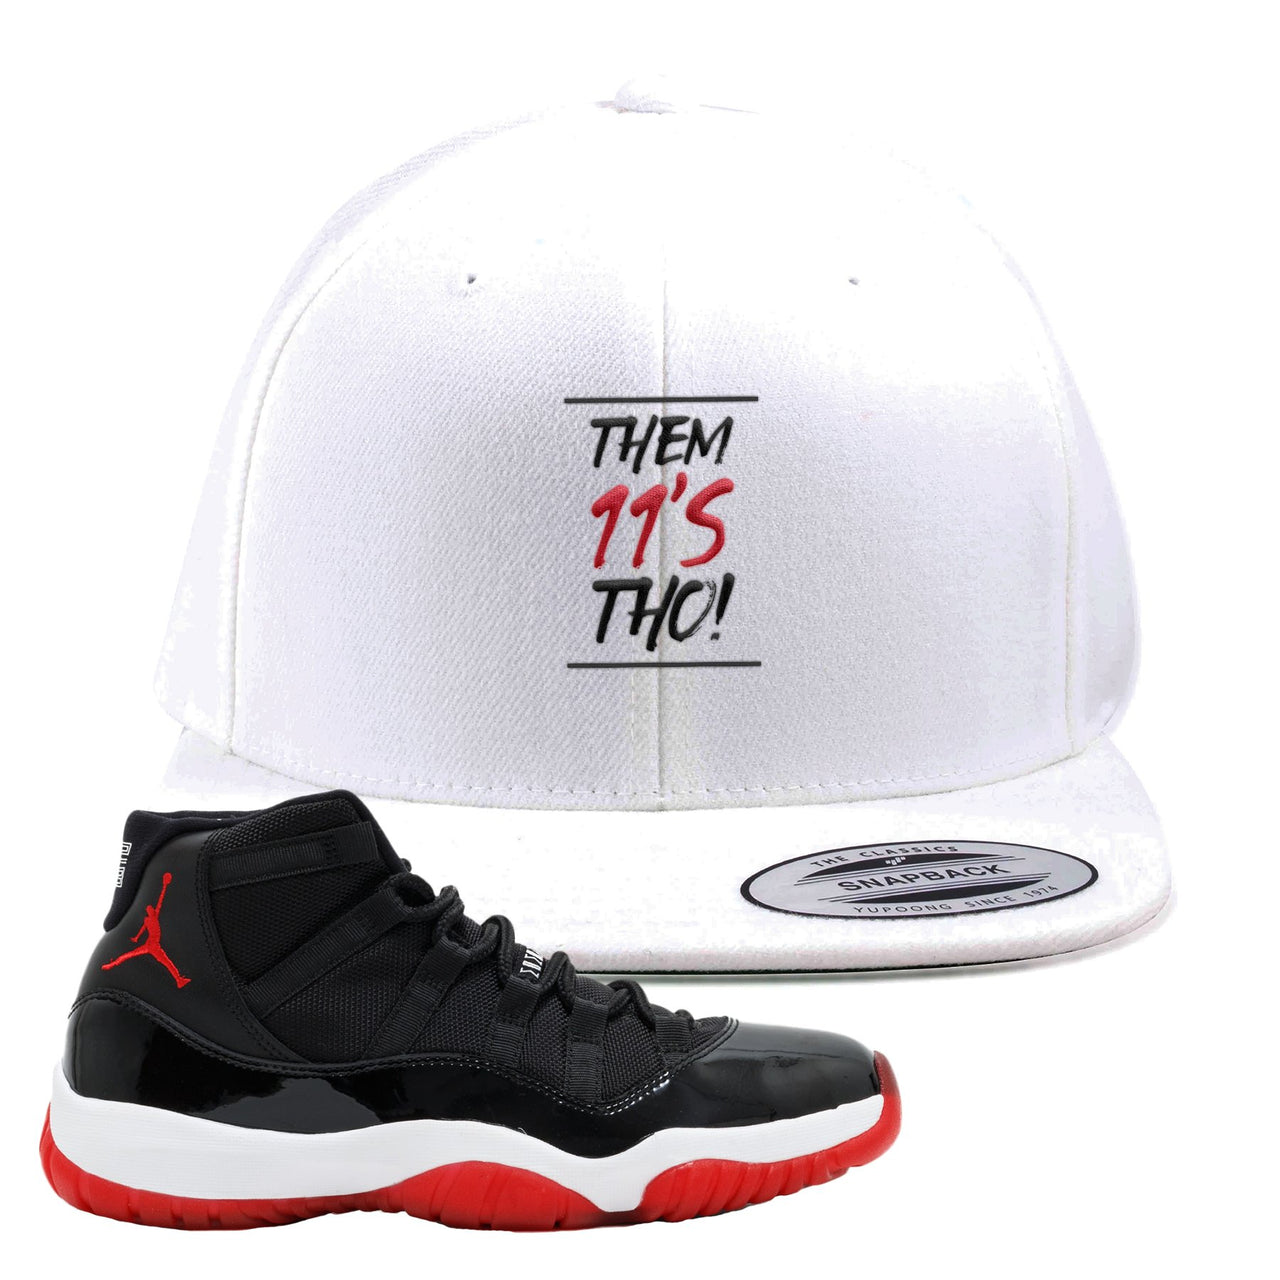 Jordan 11 Bred Them 11s Tho! White Sneaker Hook Up Snapback Hat